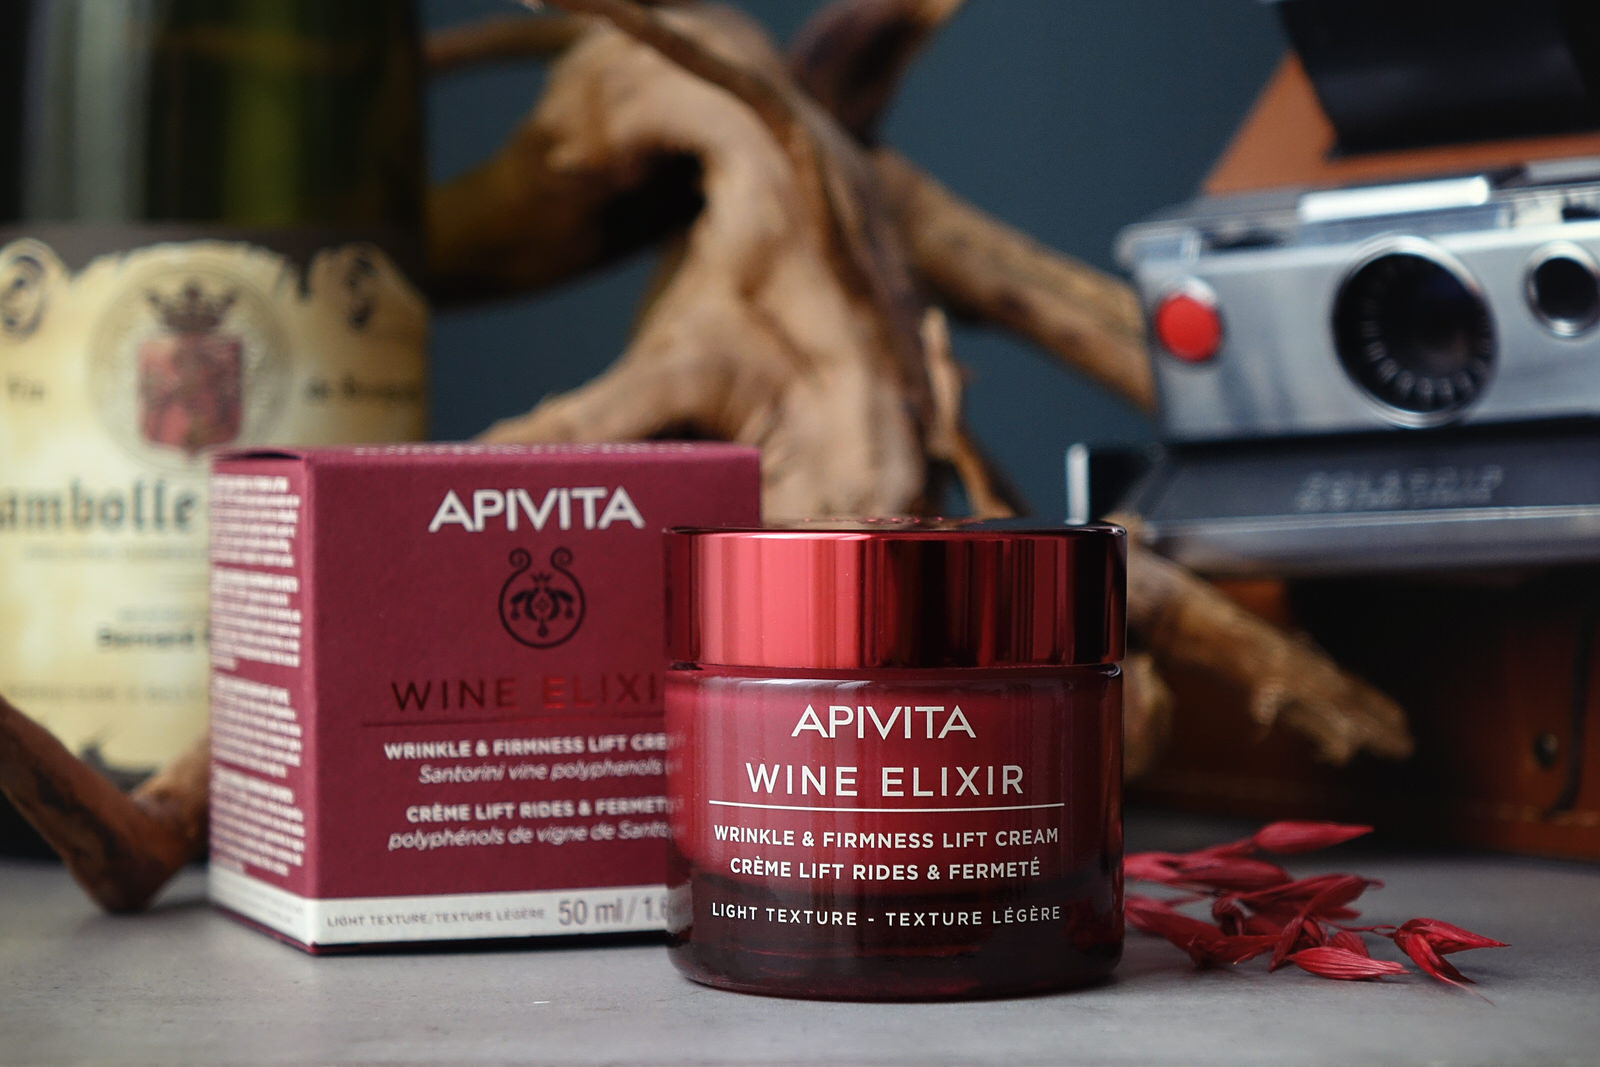 La nouvelle gamme de soins d'Apivita, "Wine Elixir"